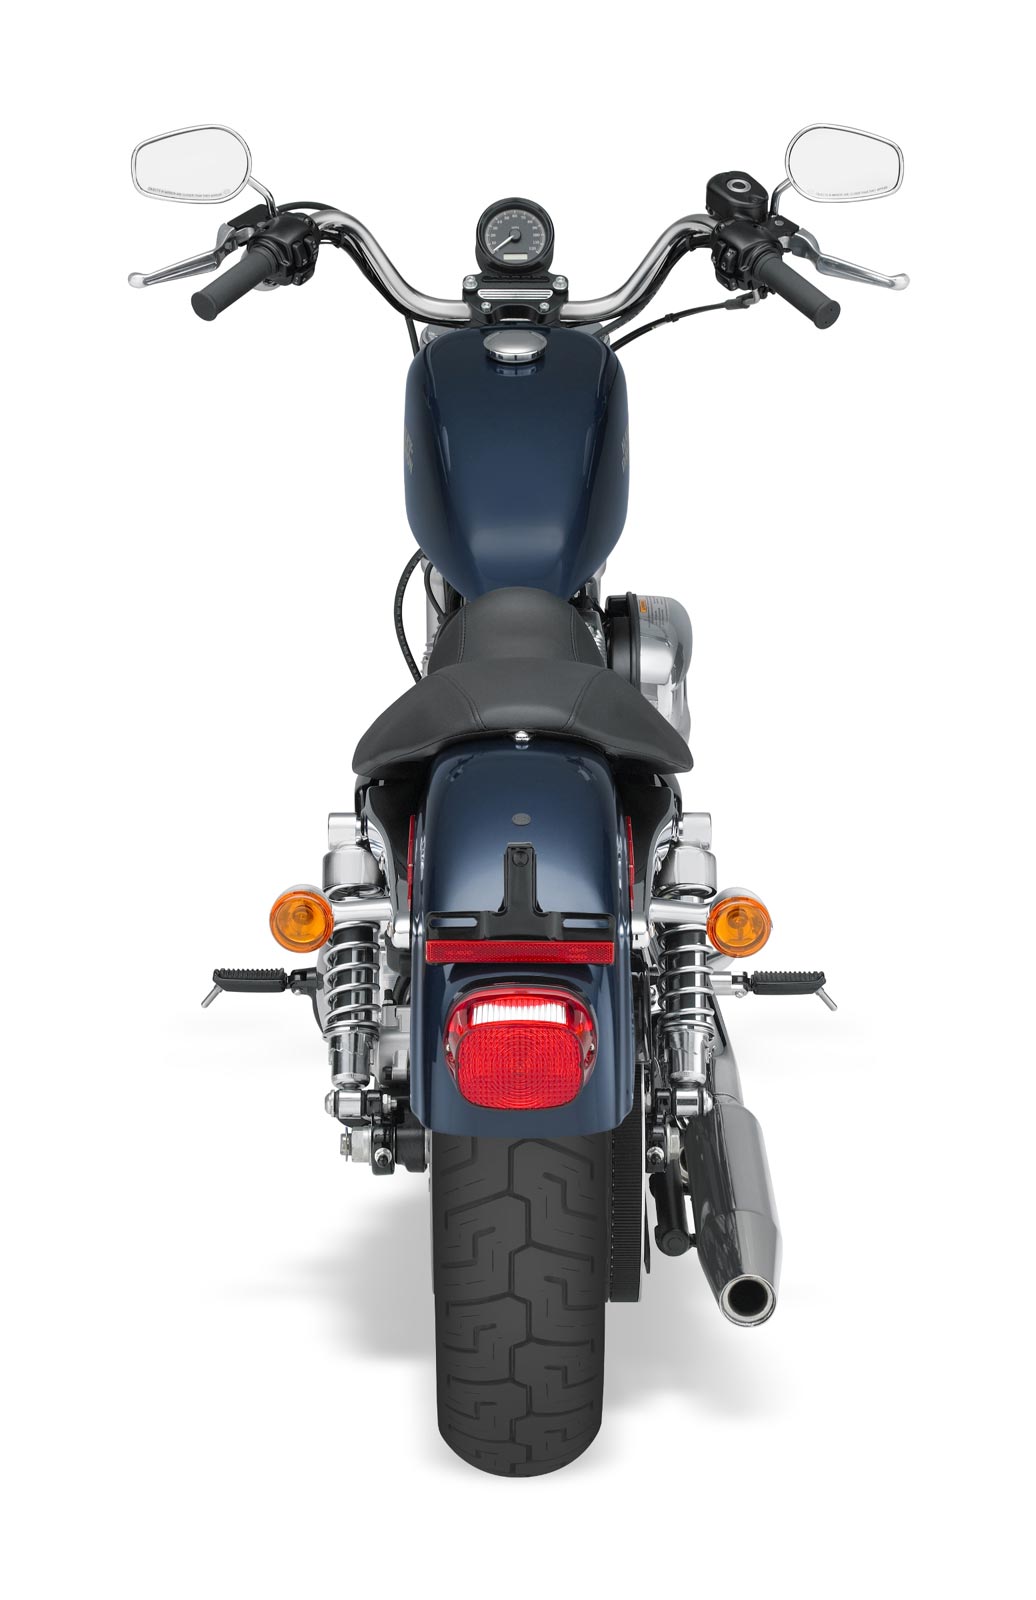 Superlow CMS chrom Motorrad Tachometer für Harley Sportster 883 Low